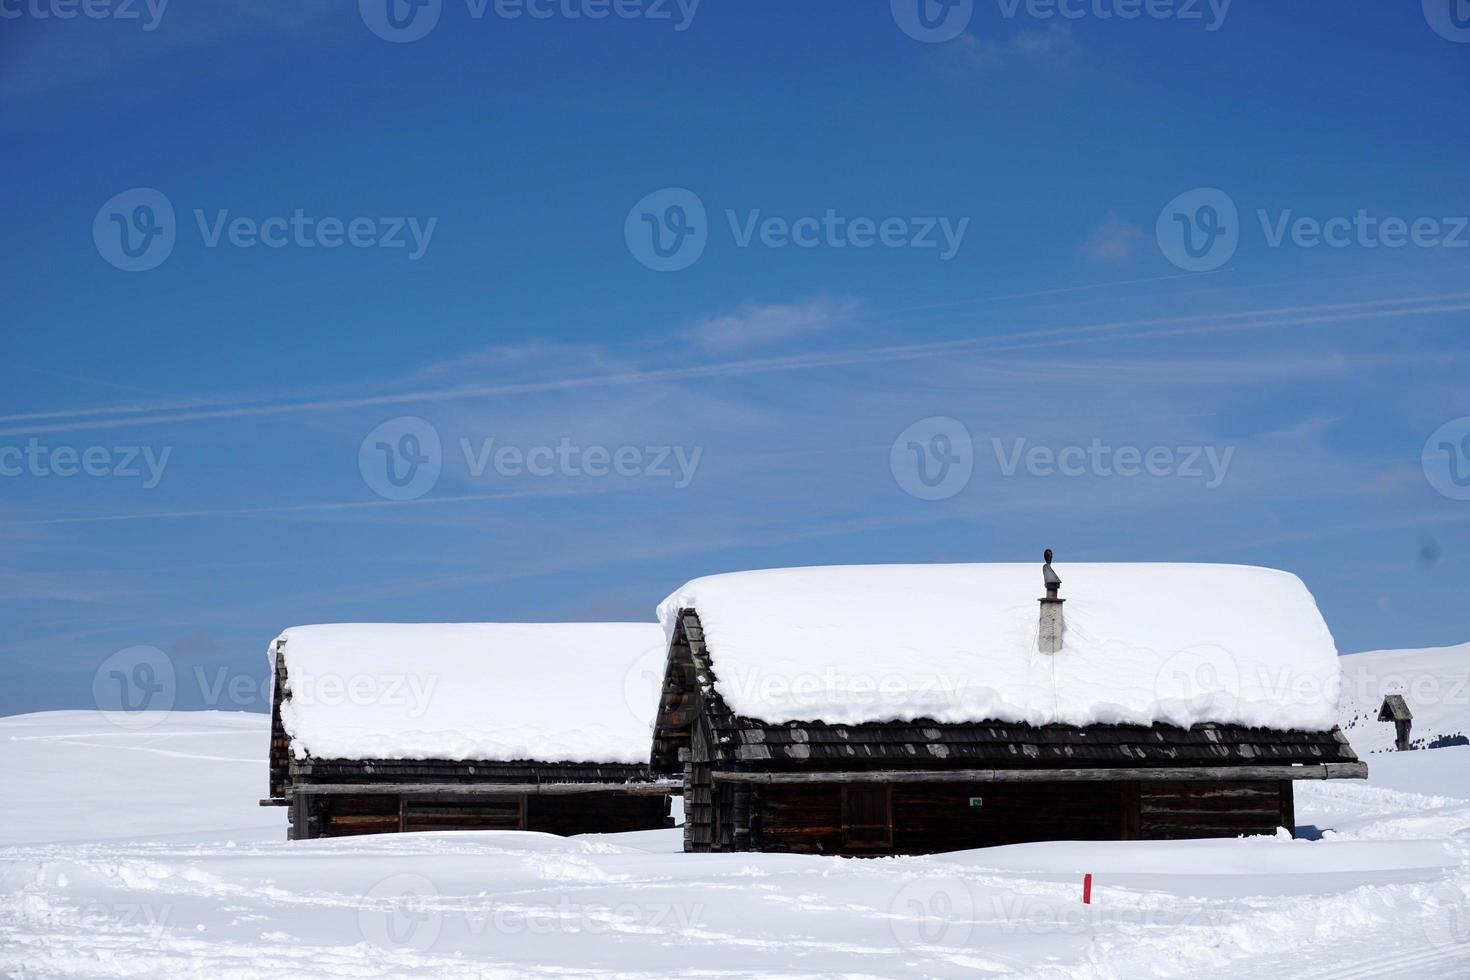 cabaña de madera en el fondo de la nieve del invierno foto